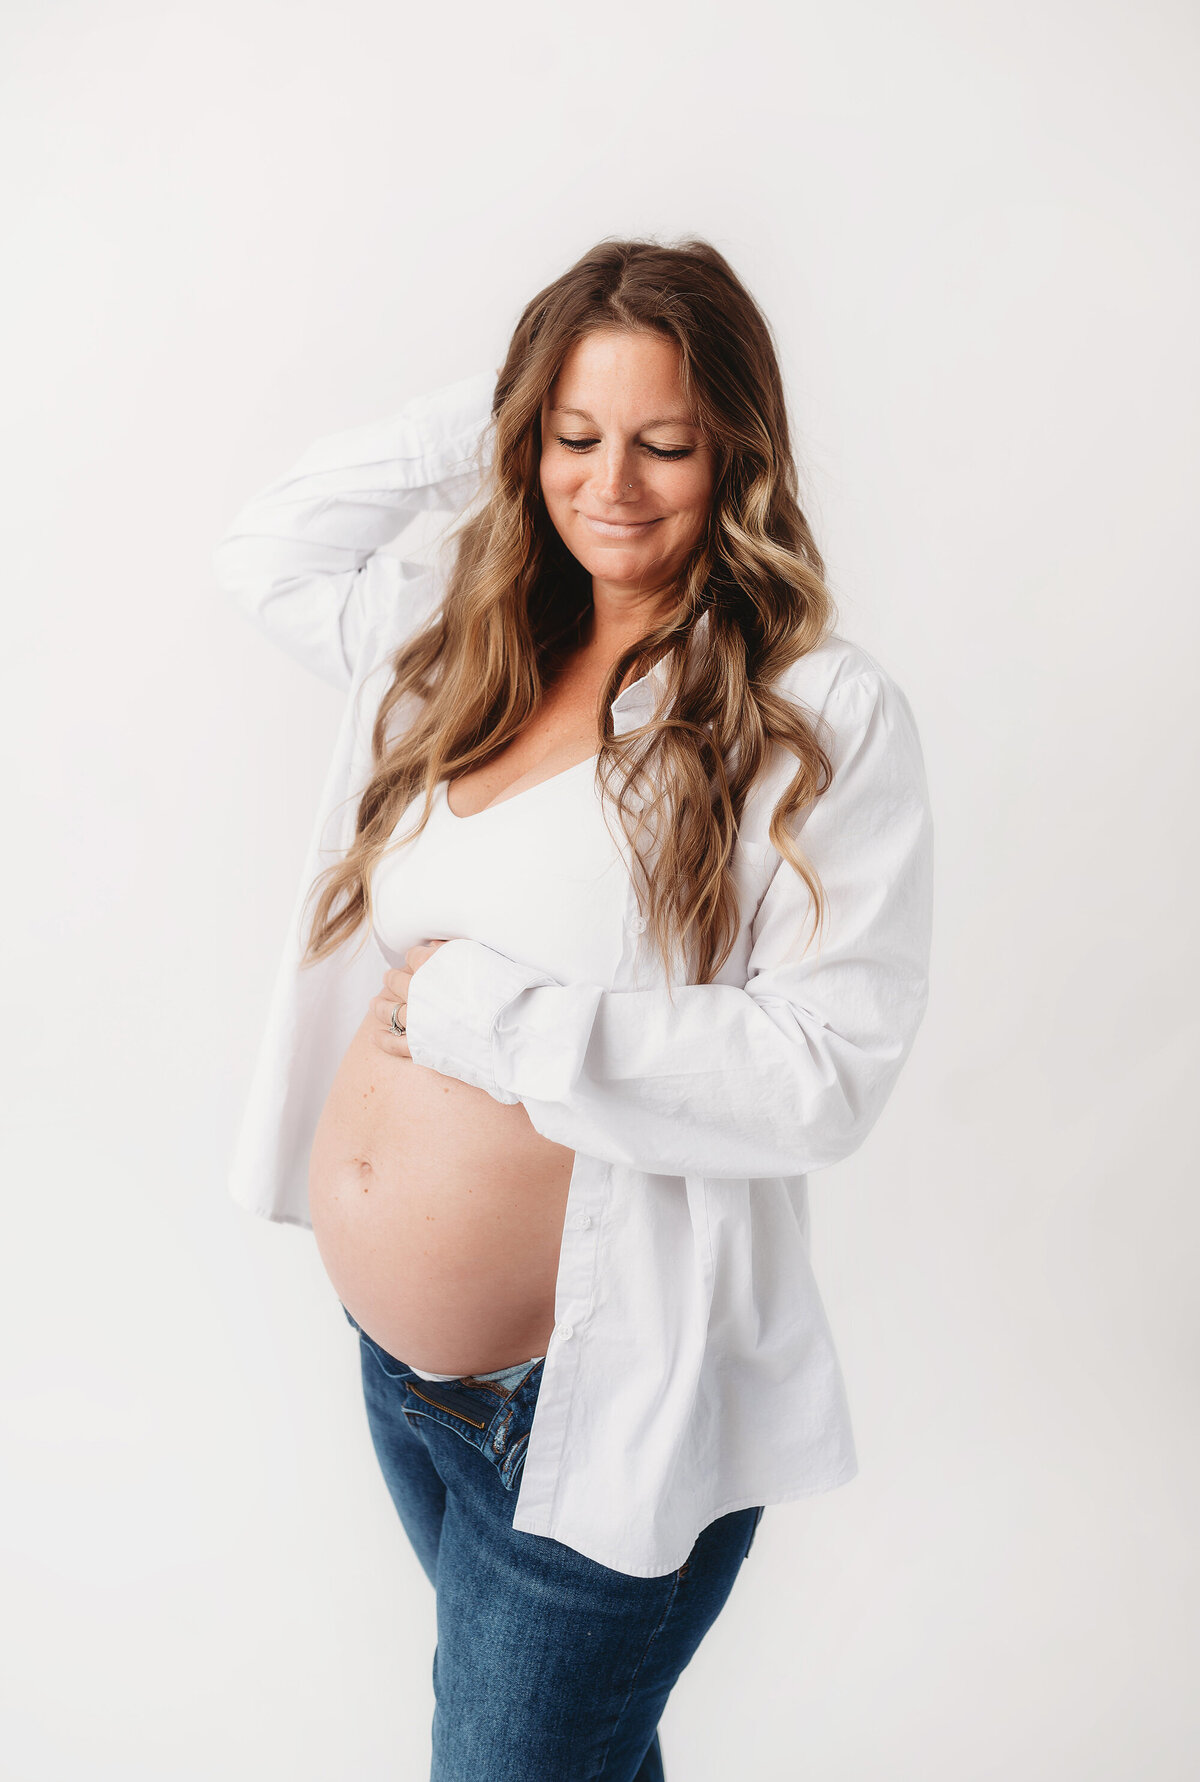 Asheville-Maternity-Photographer-79 copy